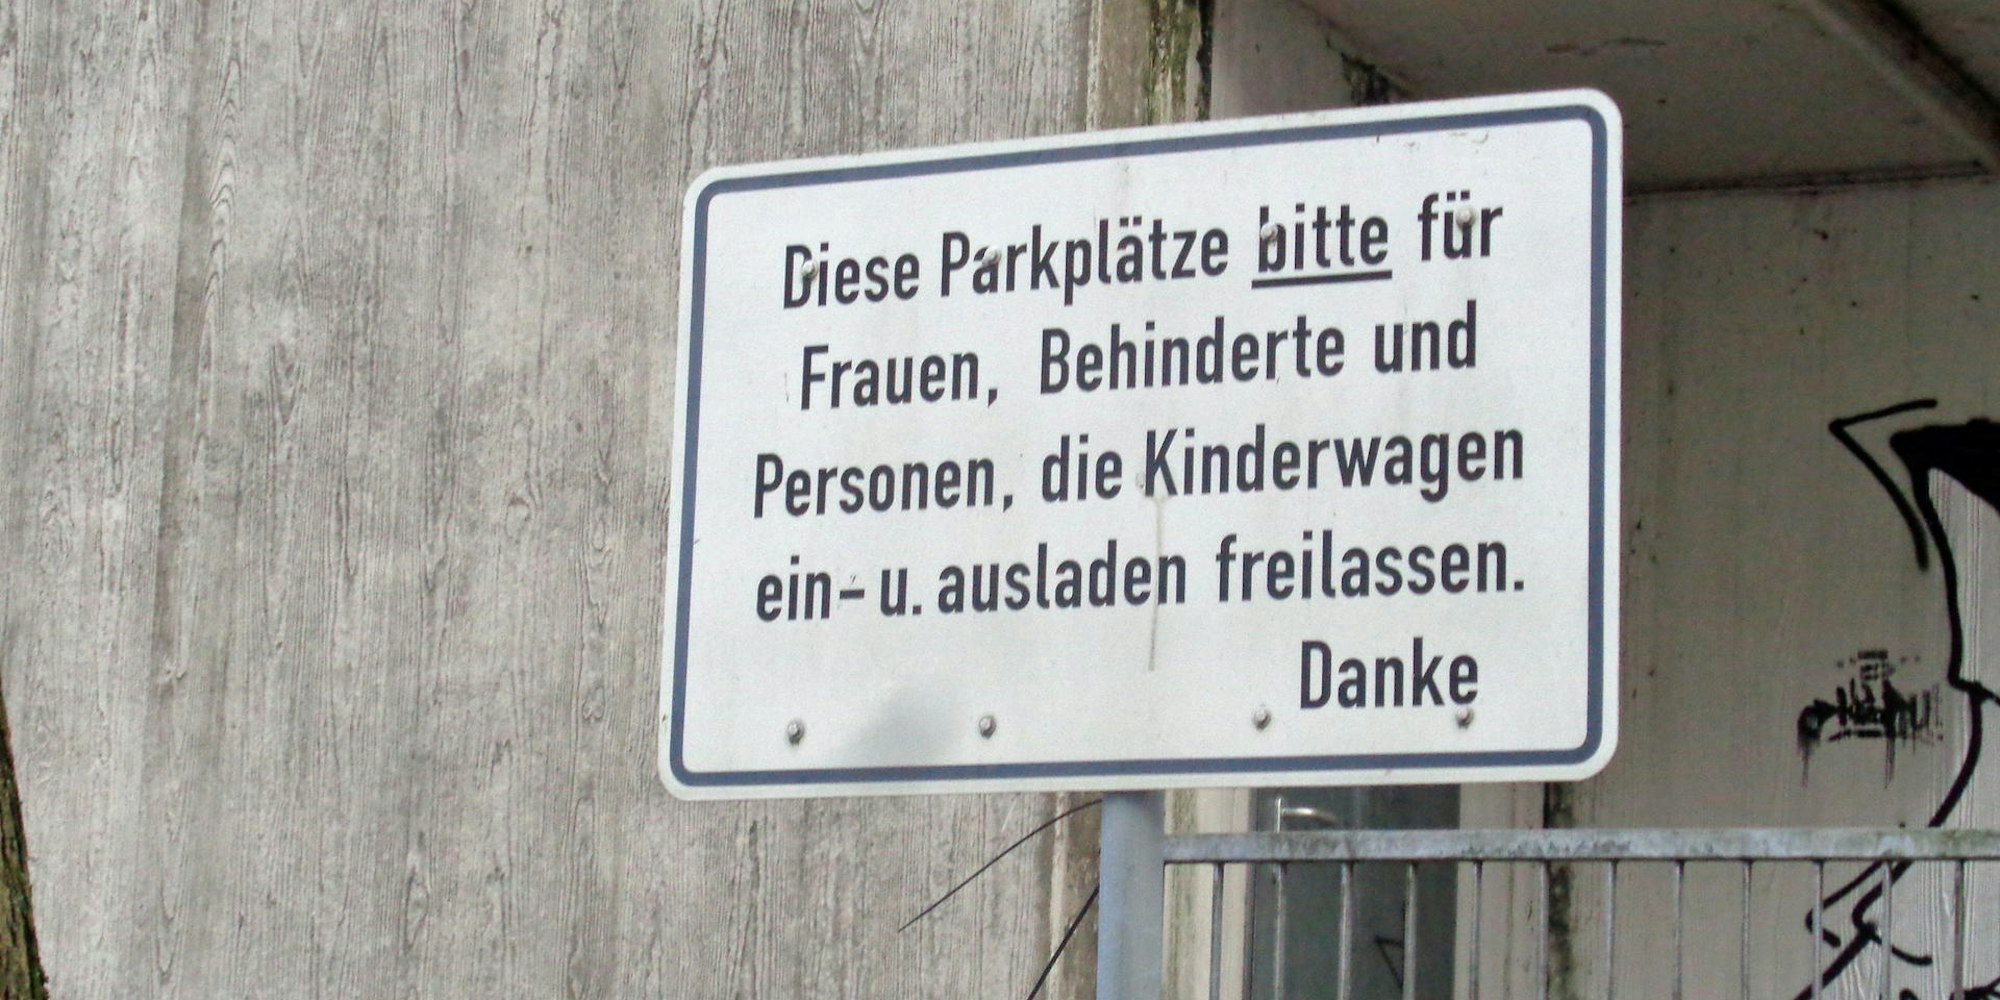 Die Frechener Stadtverwaltung lässt das Schild entfernen.